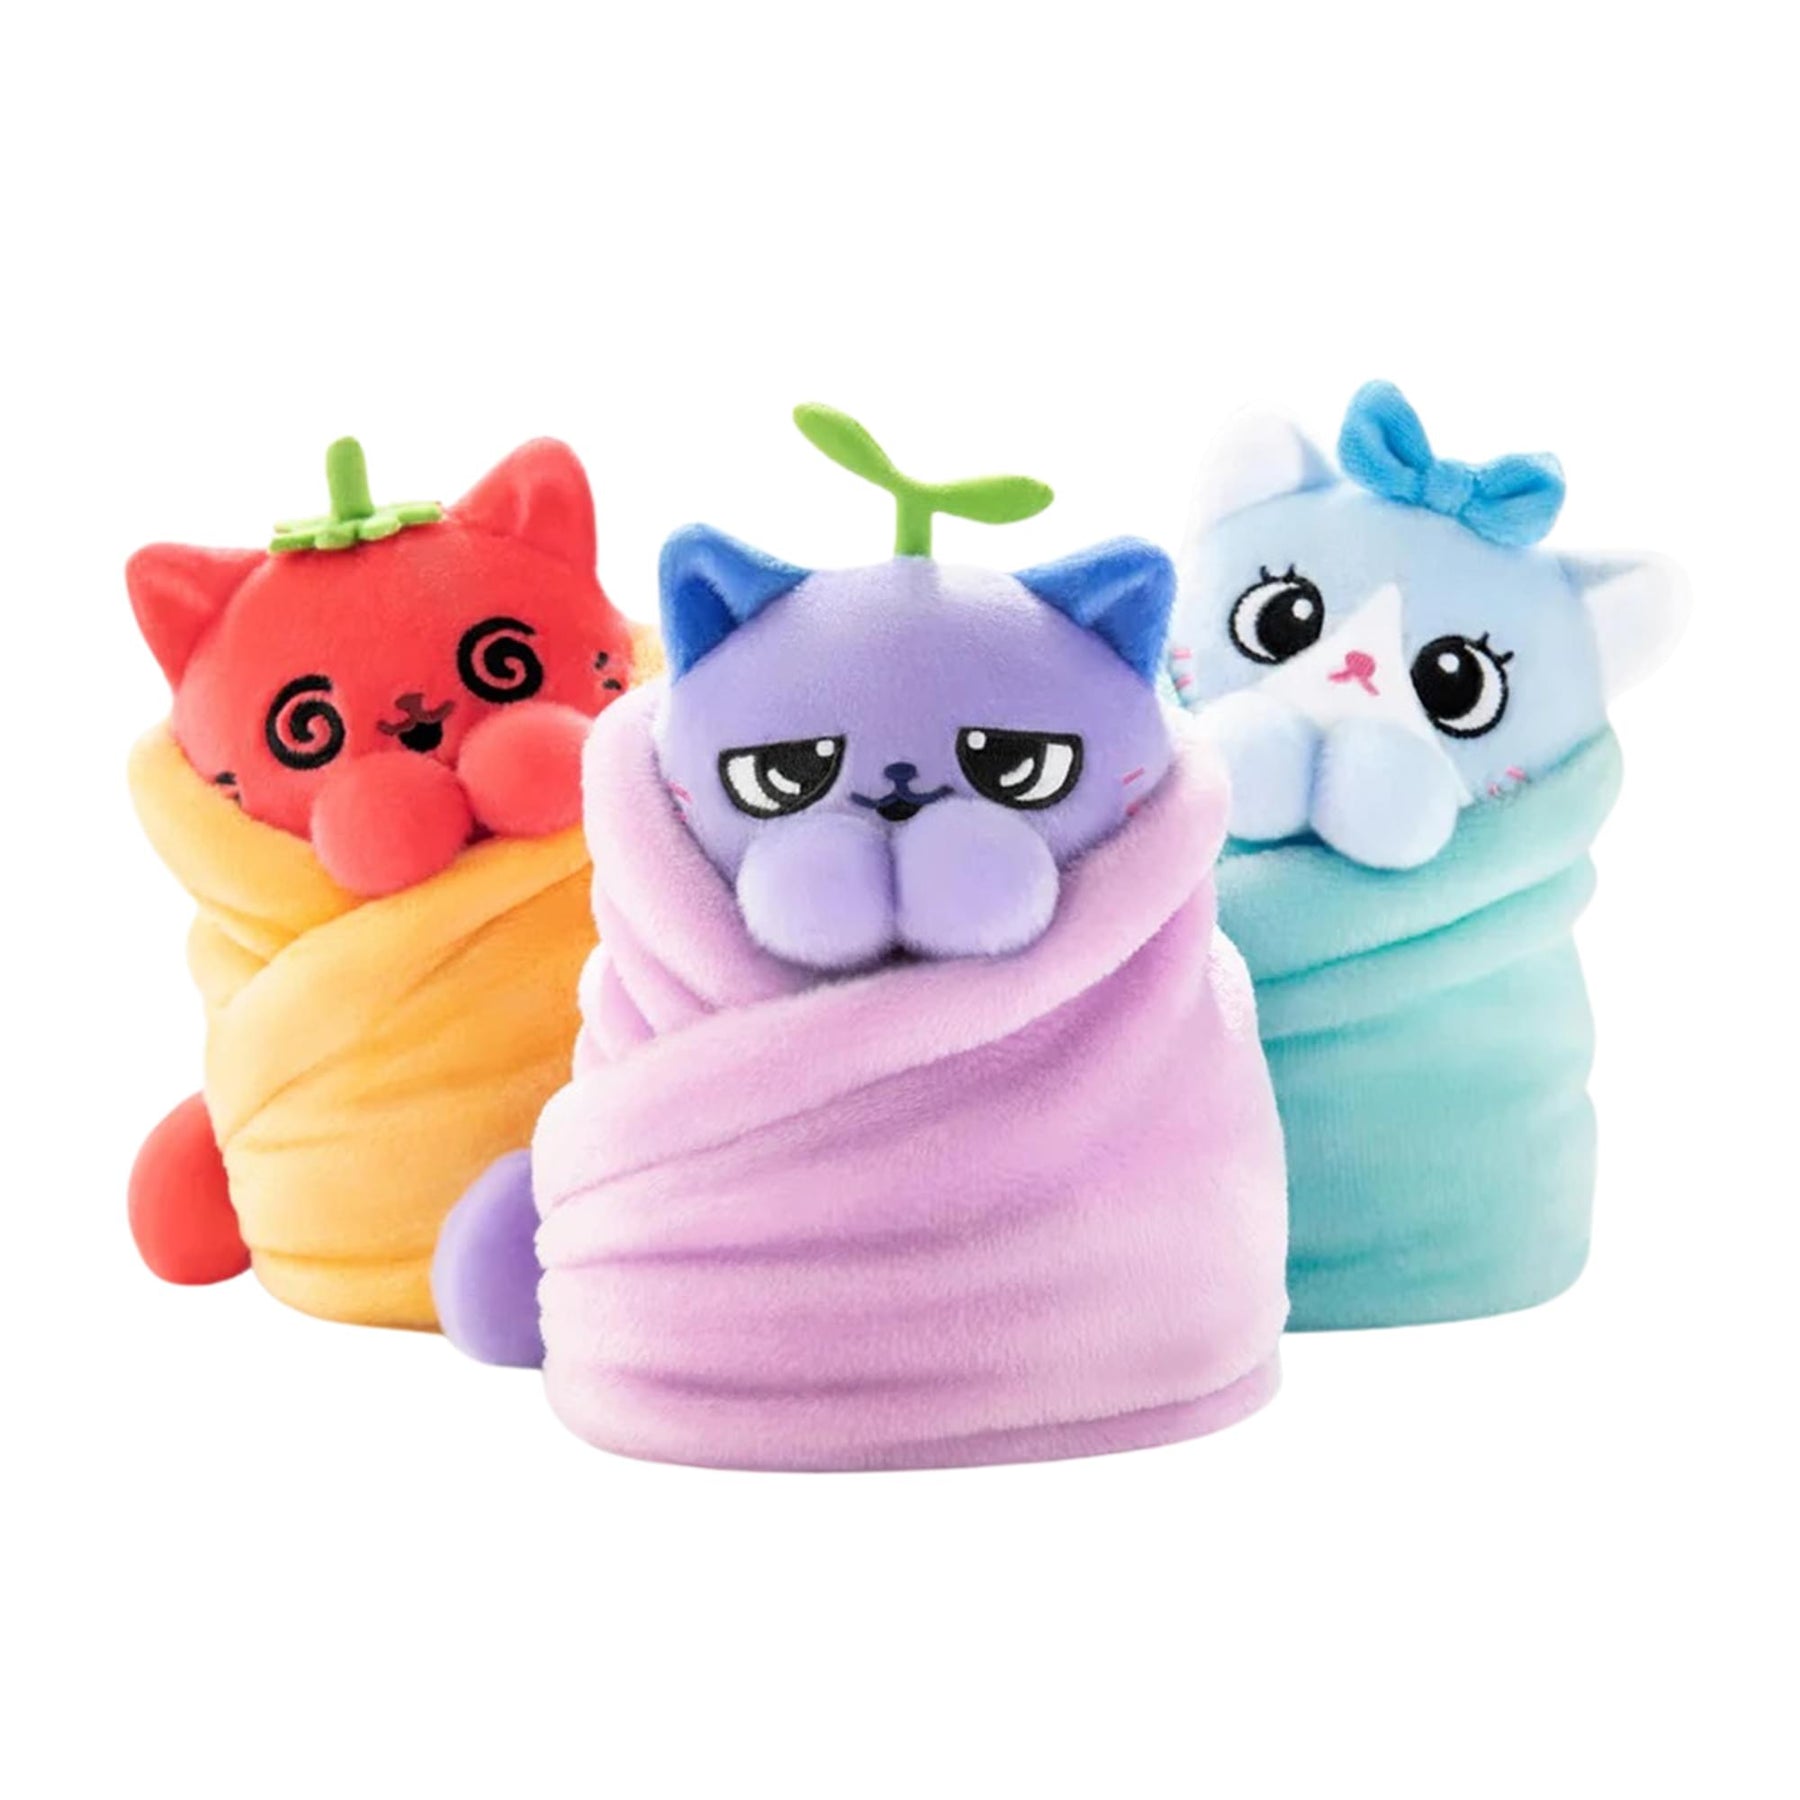 Purritos 7 Inch Plush Cat in Blanket | Beans